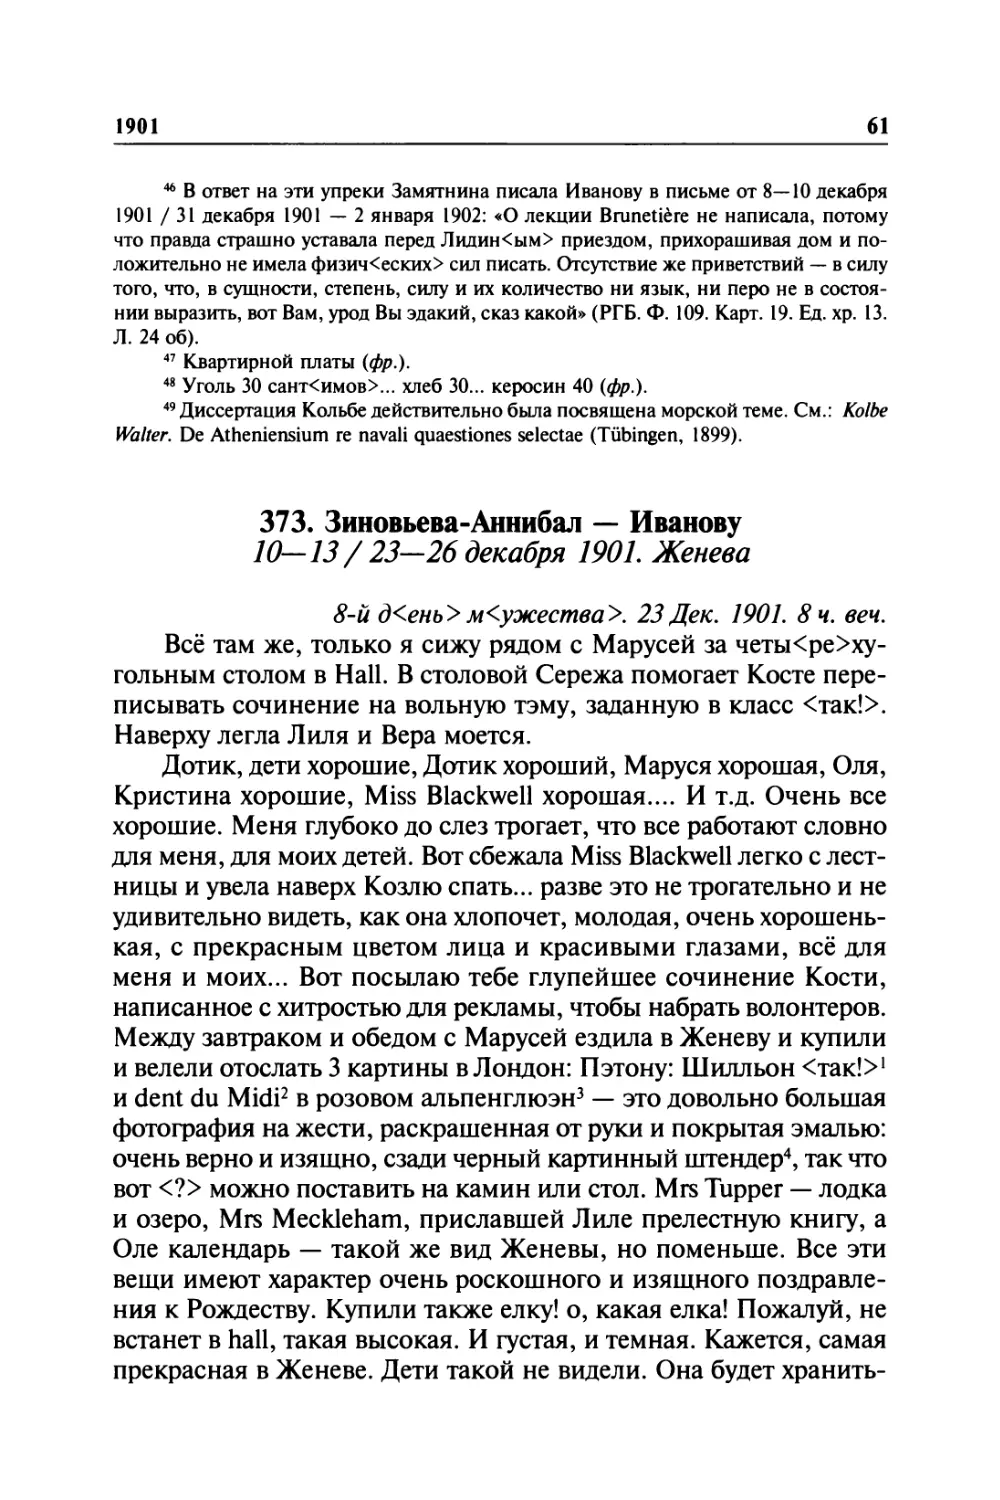 373. Зиновьева-Аннибал — Иванову. 10—13/ 23— 26 декабря 1901. Женева